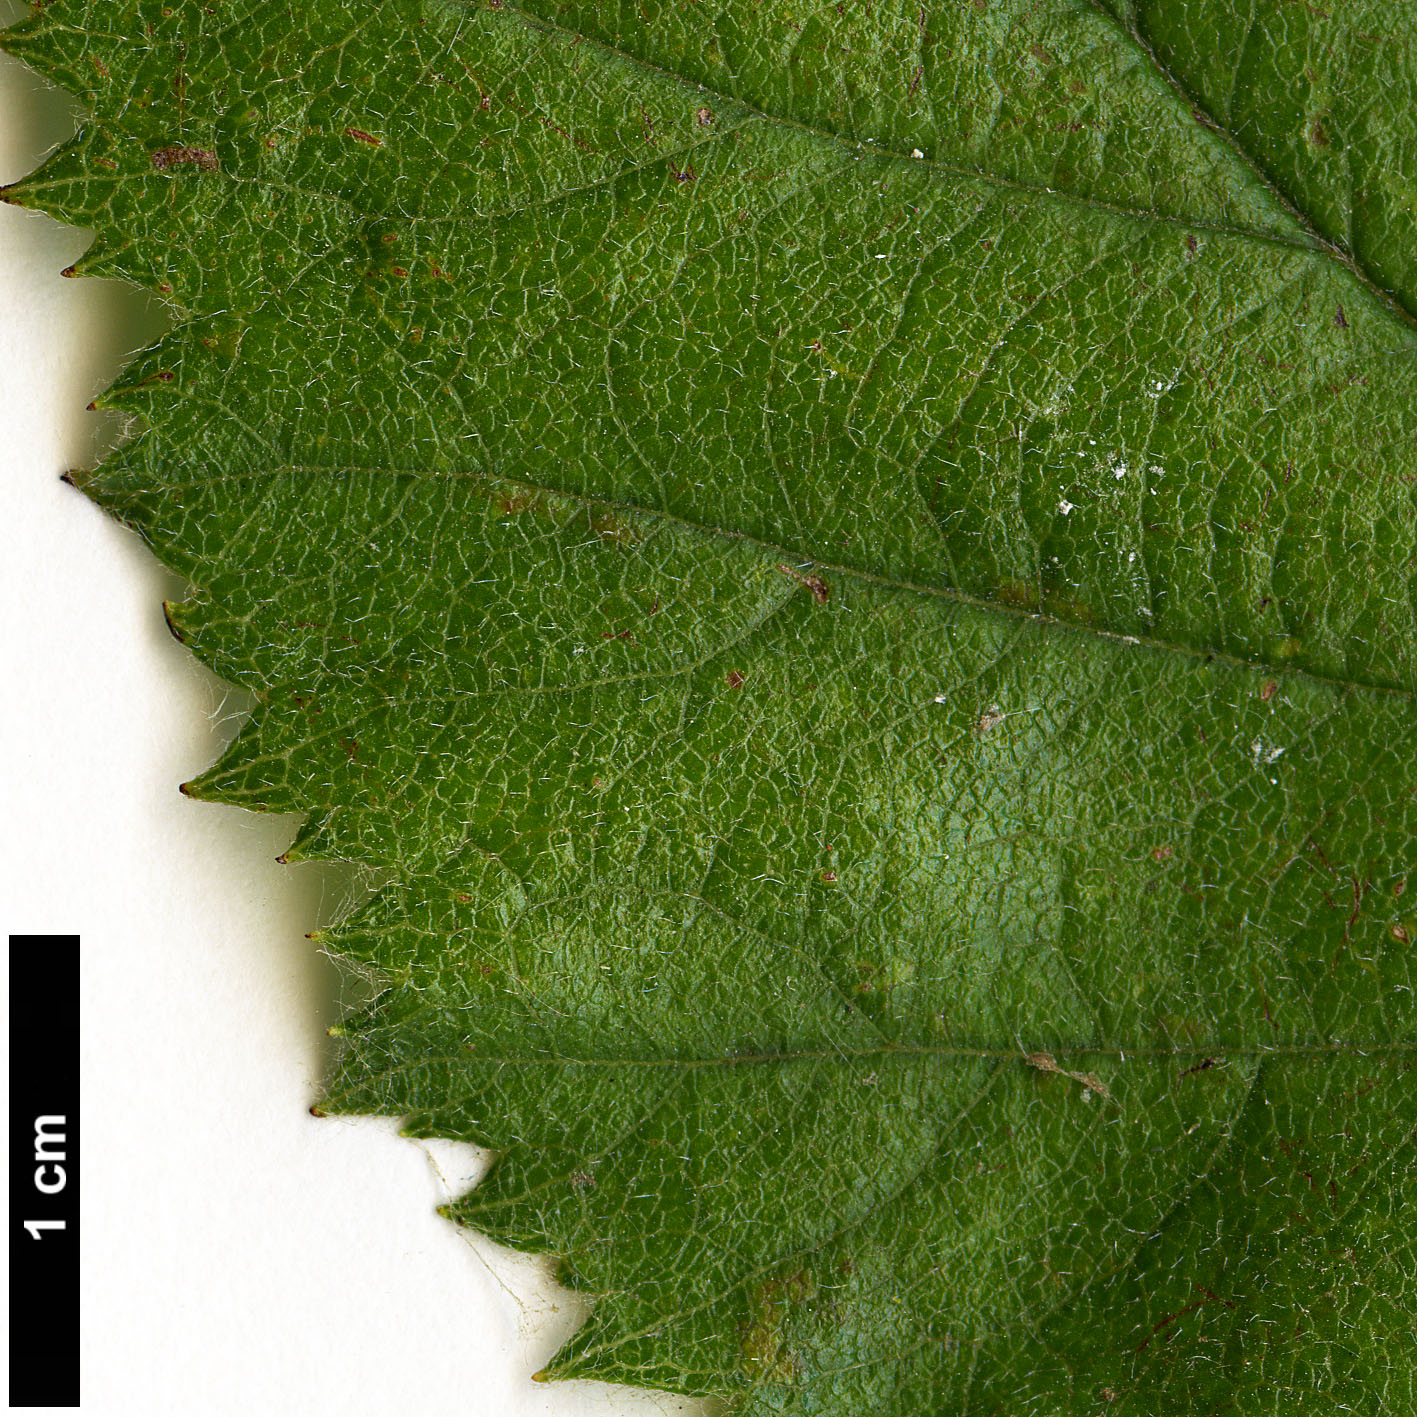 High resolution image: Family: Rosaceae - Genus: Crataegus - Taxon: brazoria